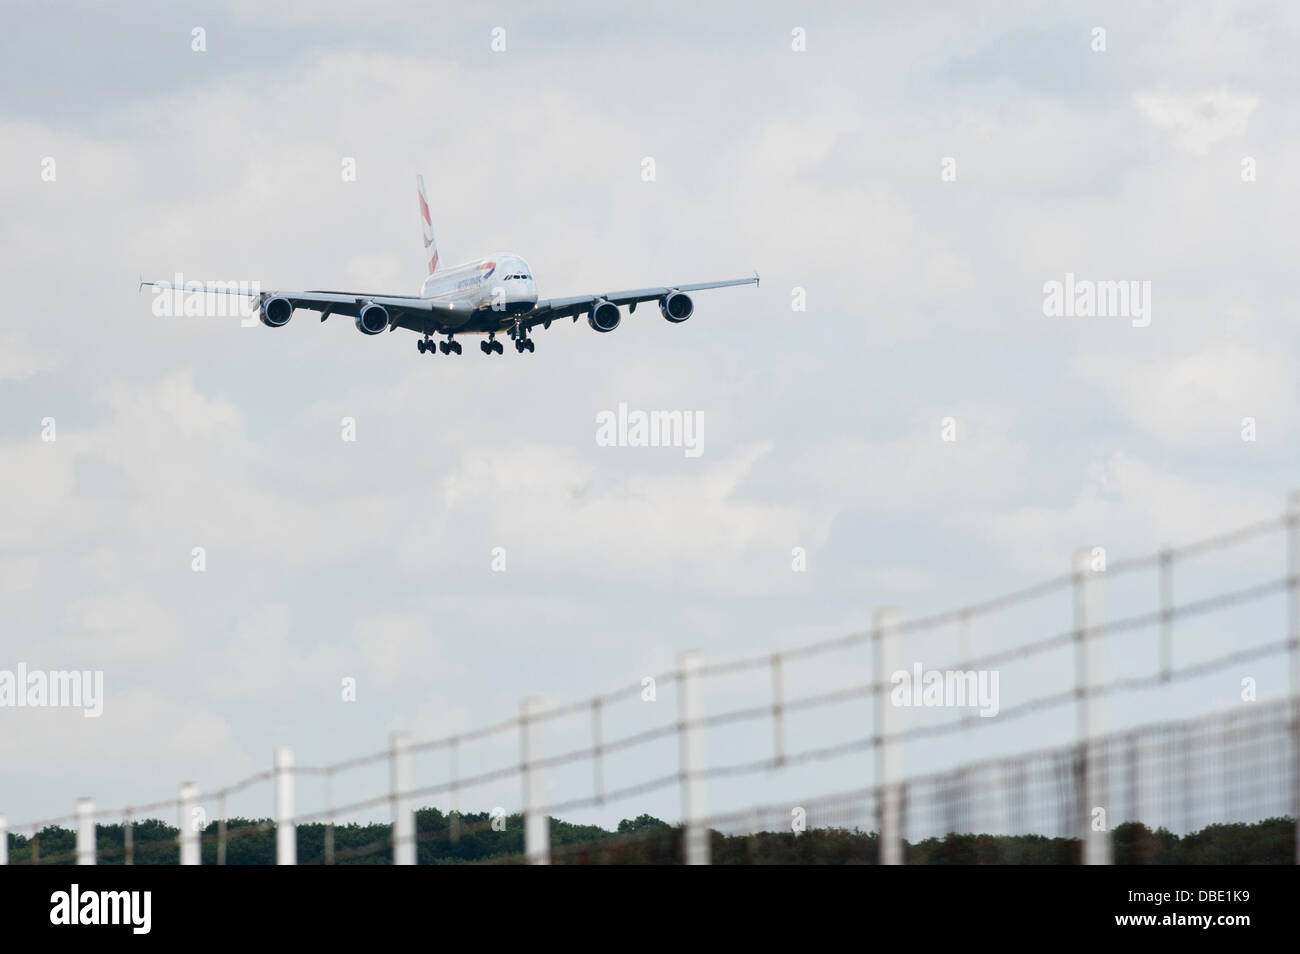 El aeropuerto de Stansted, Londres, Reino Unido. El 29 de julio de 2013. British Airways un avión de pasajeros Airbus A380 aterriza en el aeropuerto de Stansted por primera vez como parte de un programa de capacitación de largo recorrido. Un gran número de Plane spotters asistió también al perímetro vallado para presenciar el aterrizaje. El avión está por despegar de nuevo en 0800 mañana por la mañana ( 30 de julio). Crédito: el surtido Stock Photo/Alamy Live News Foto de stock